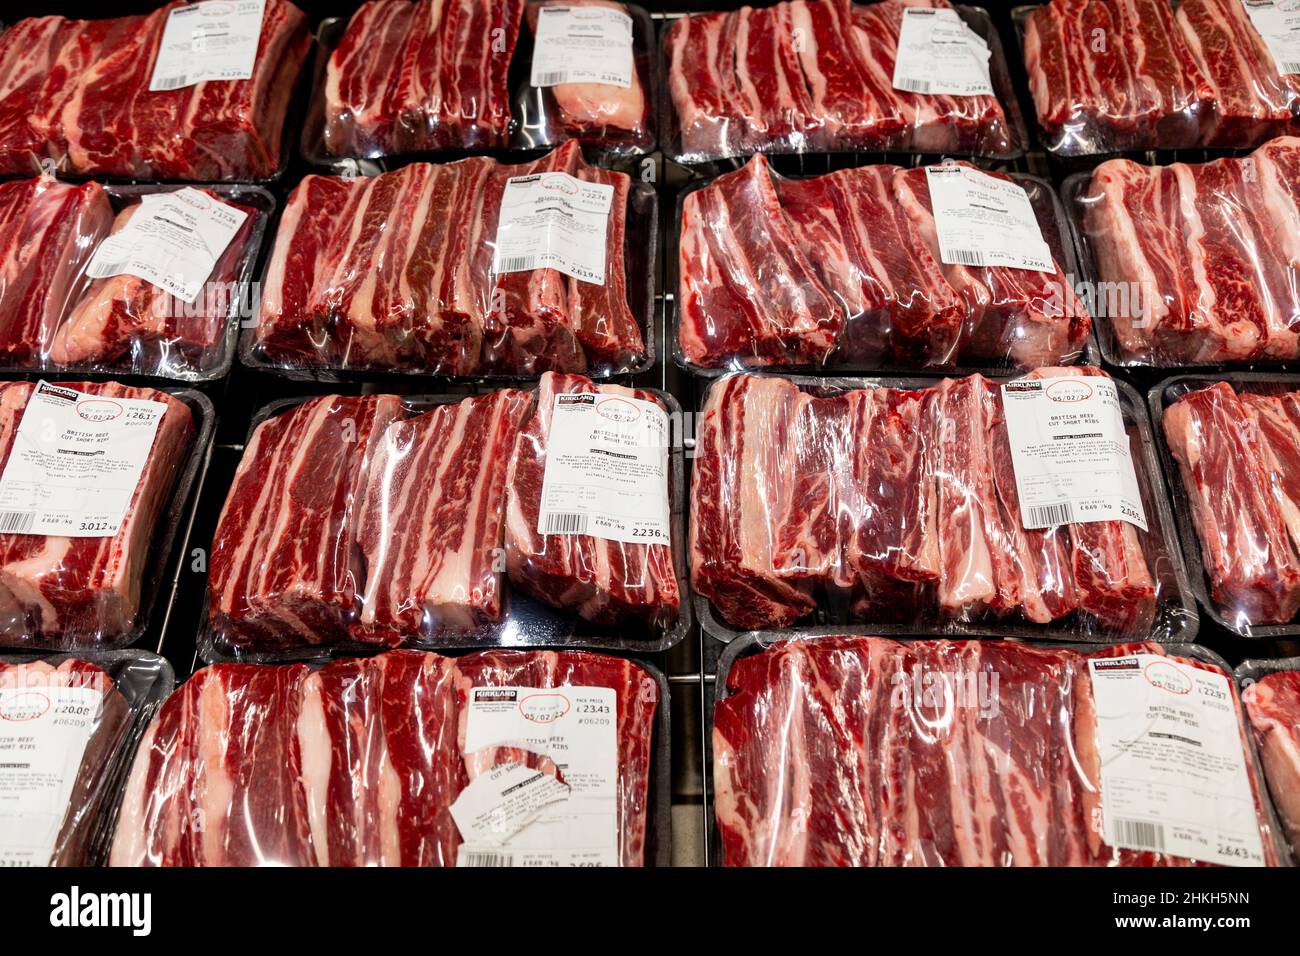 Paquets de côtes enveloppées dans du plastique, de la viande rouge dans un réfrigérateur de supermarché Banque D'Images